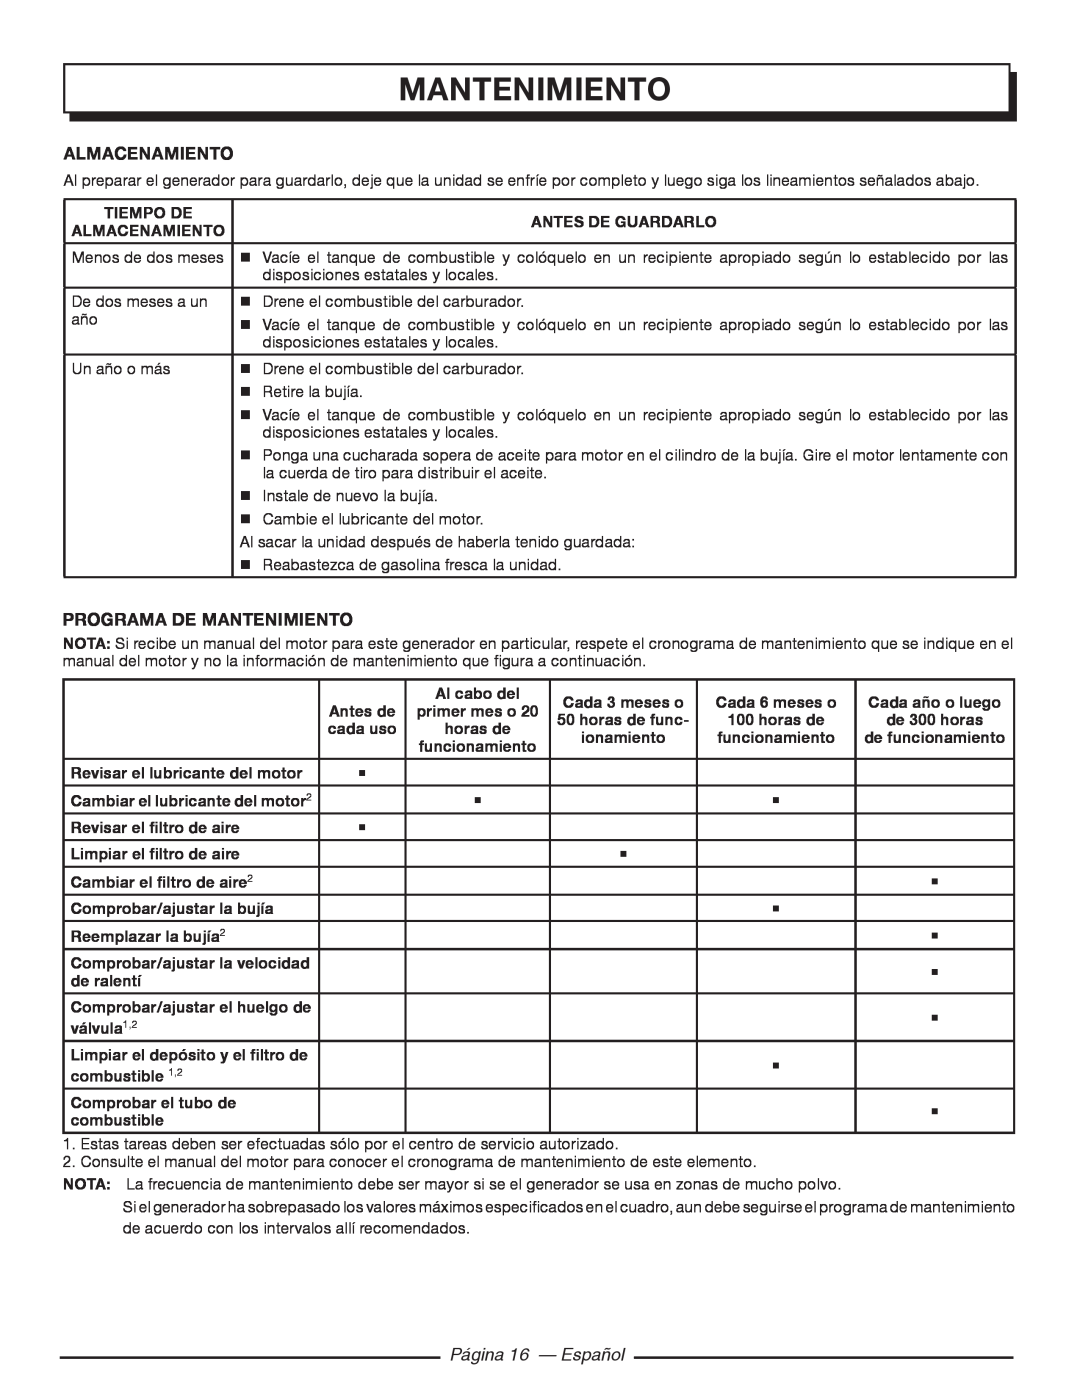 Homelite HGCA5700 manuel dutilisation Página 16 — Español, almacenamiento, Programa De Mantenimiento 